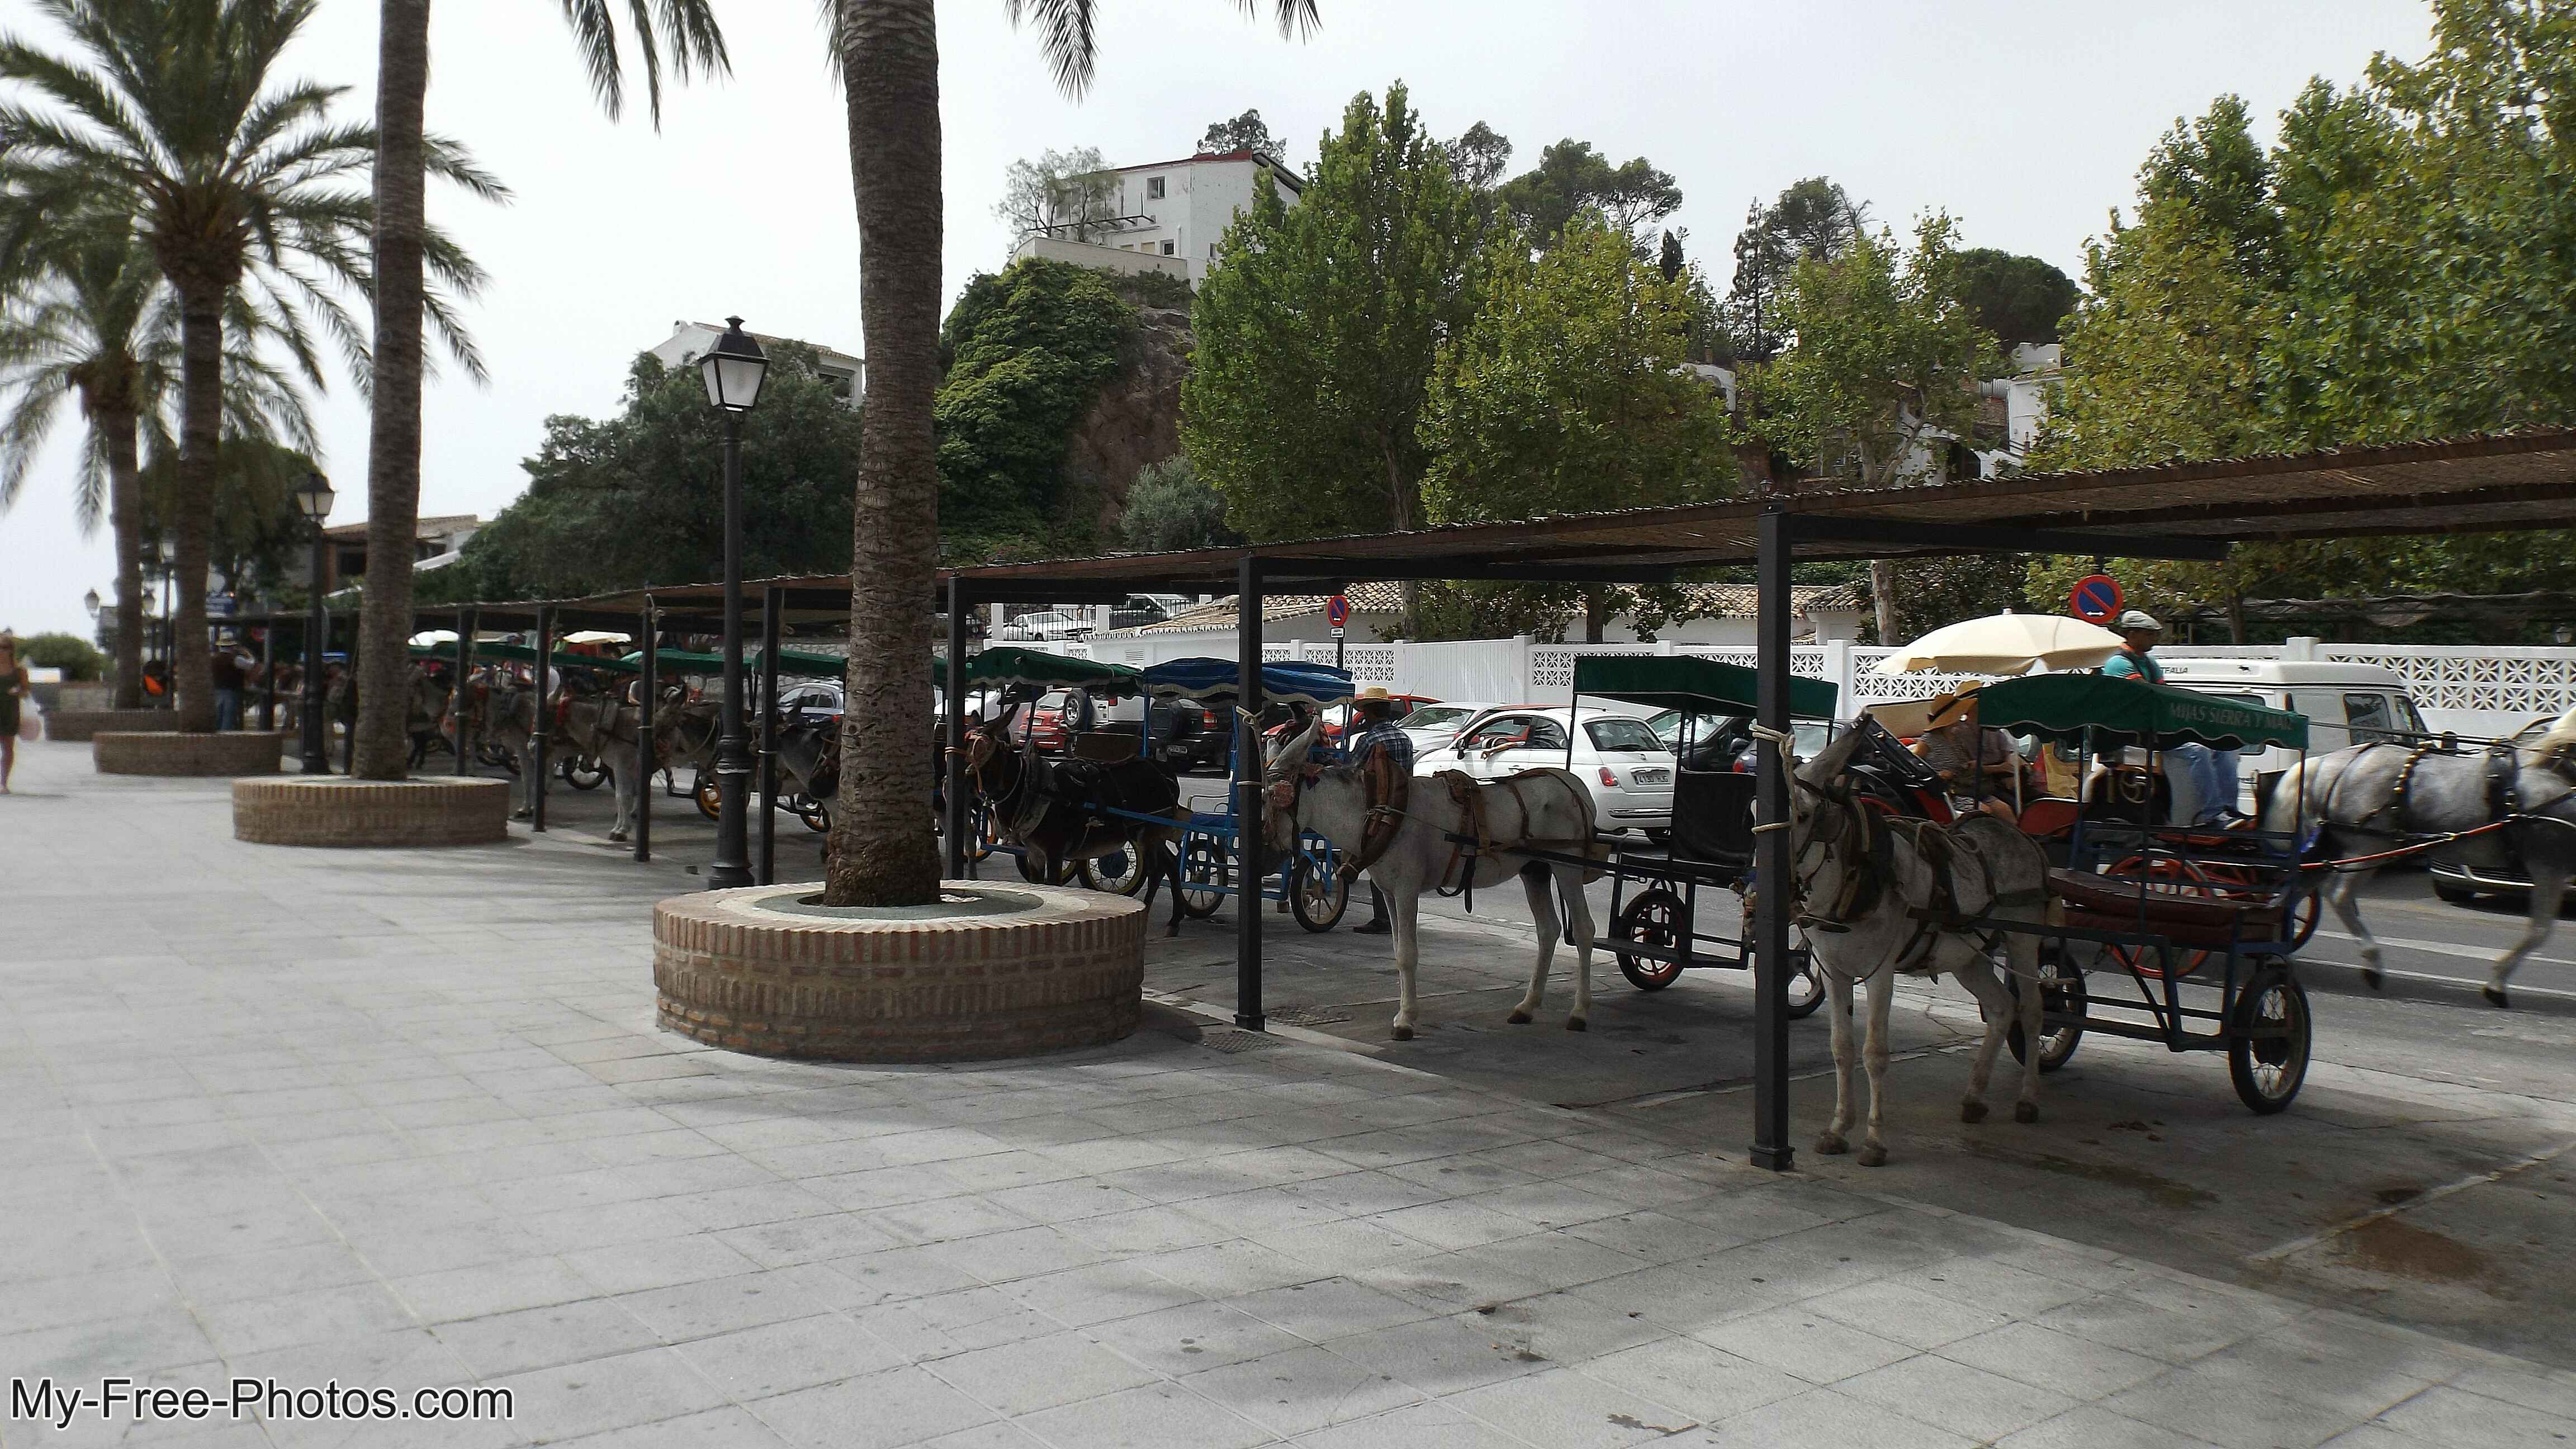  Mijas,Malaga, Spain